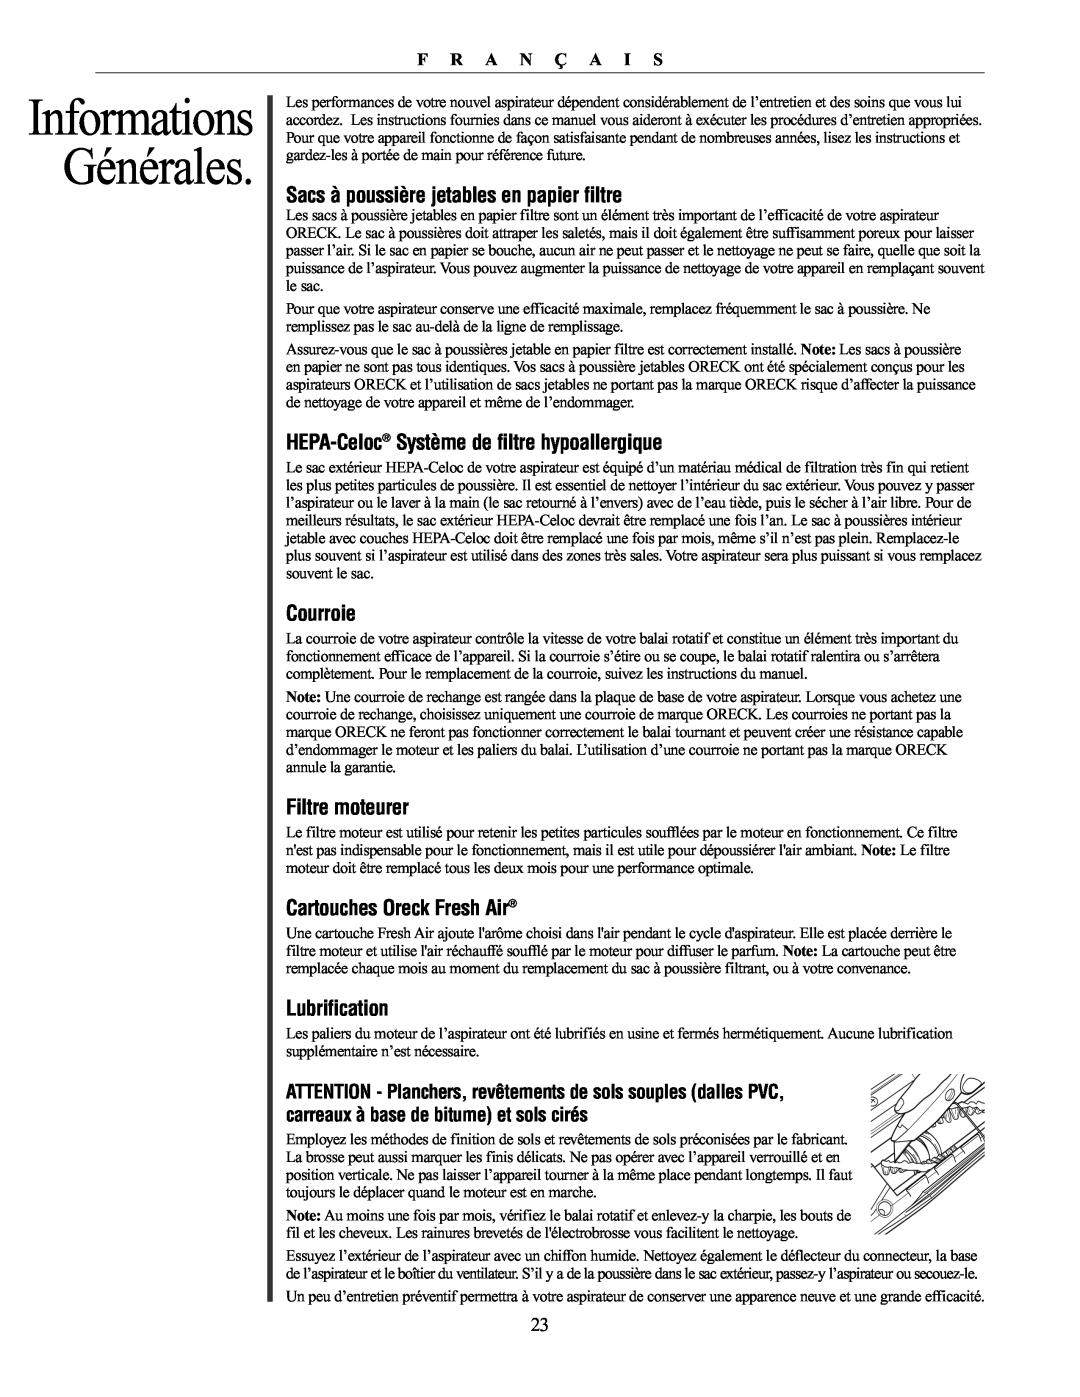 Oreck XL21 Informations Générales, Sacs à poussière jetables en papier filtre, HEPA-Celoc Système de filtre hypoallergique 